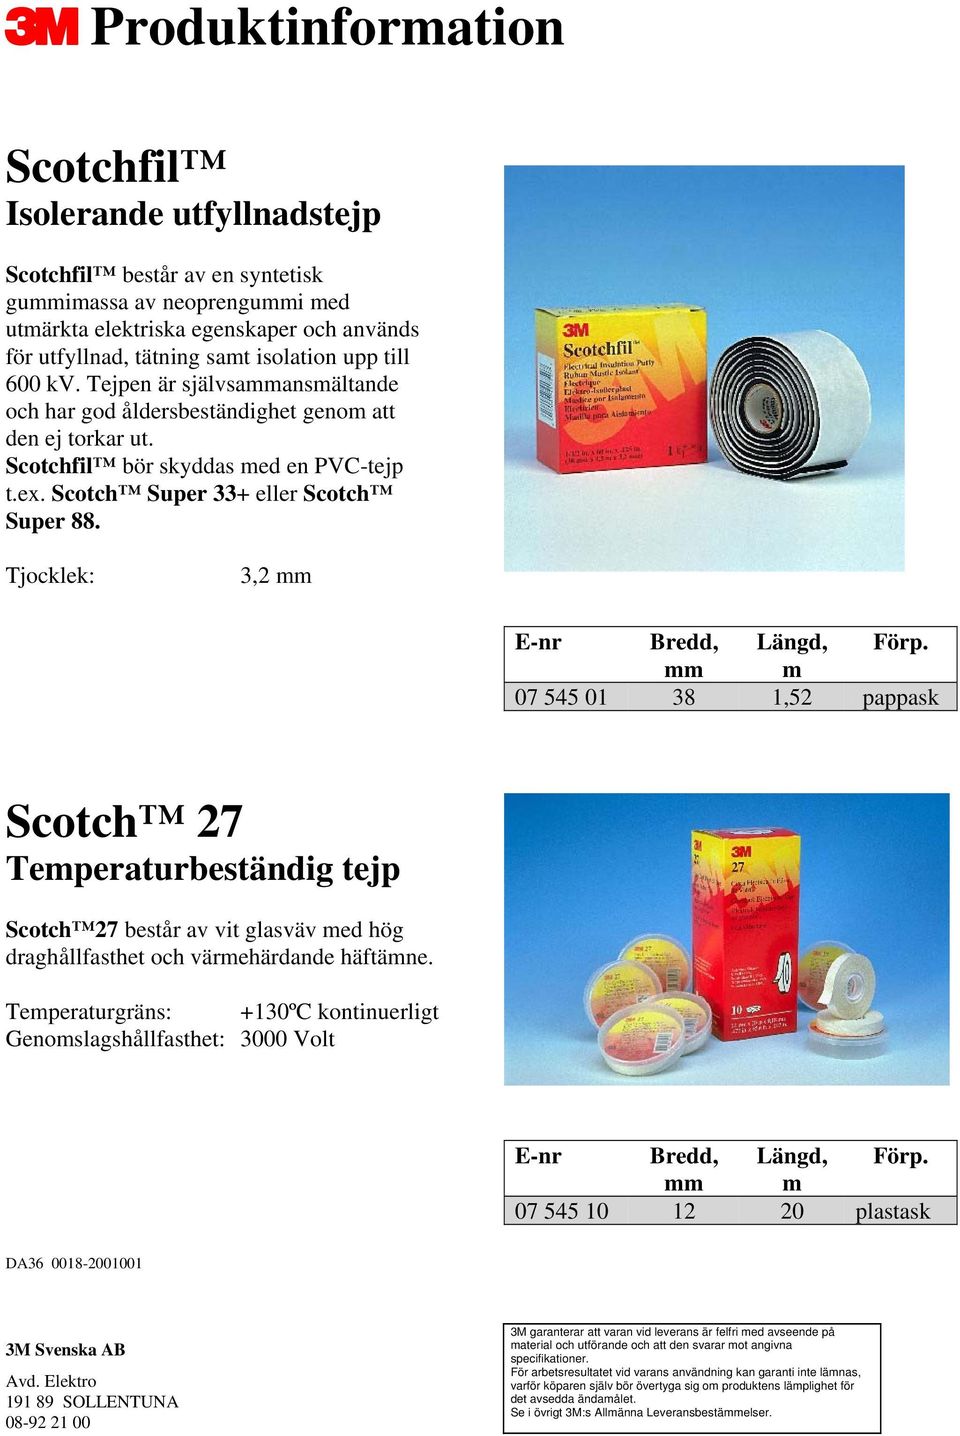 Scotchfil bör skyddas med en PVC-tejp t.ex. Scotch Super 33+ eller Scotch Super 88.